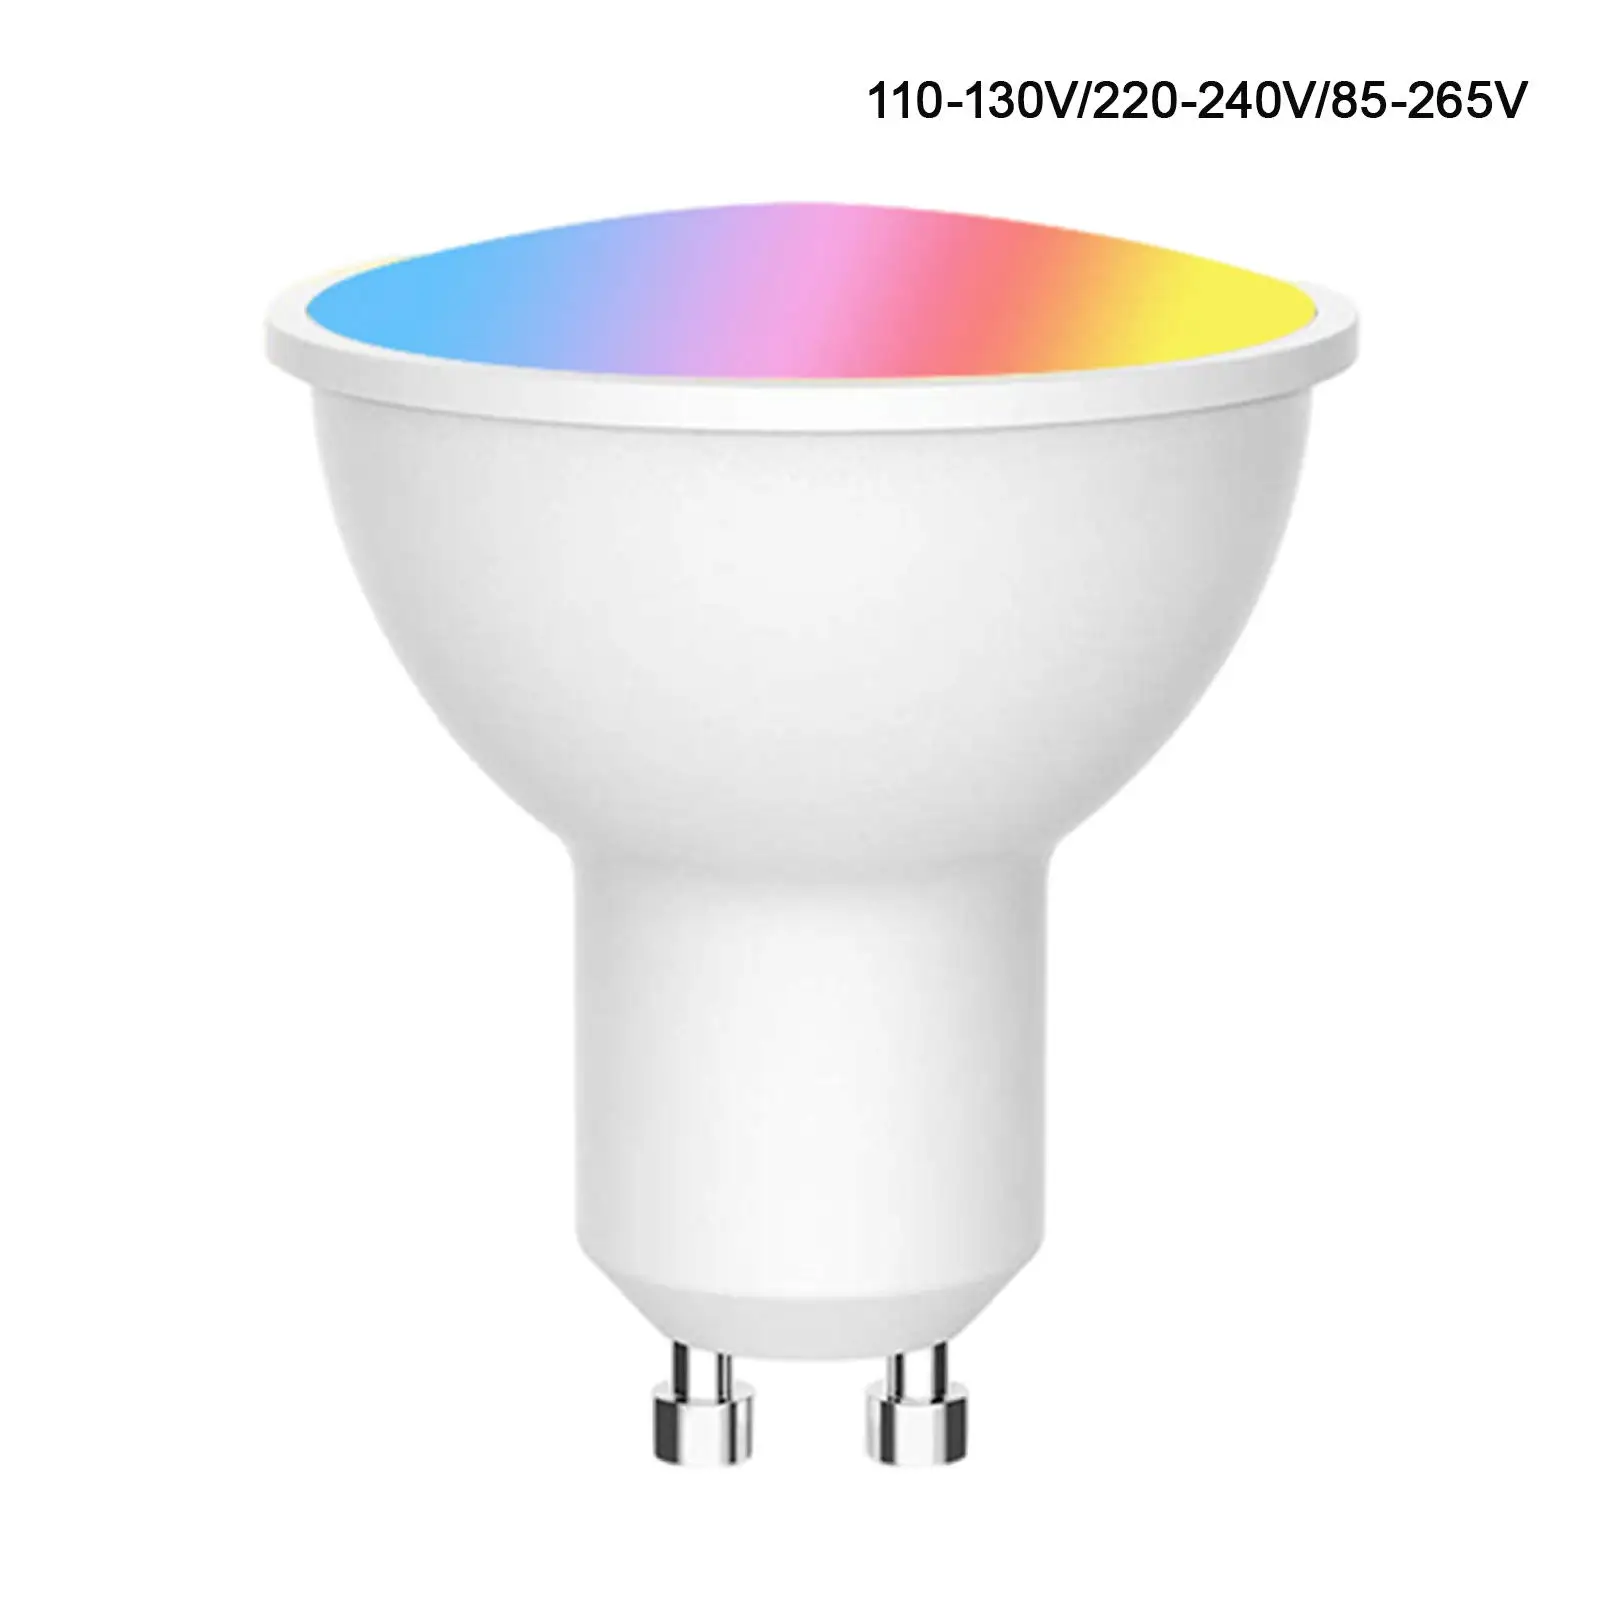 Smart Light Bulb GU10 Base 16 Million Color 32W Equivalent Mood Light 8 Scene Model for Google Home Wedding Indoor/Outdoor Home